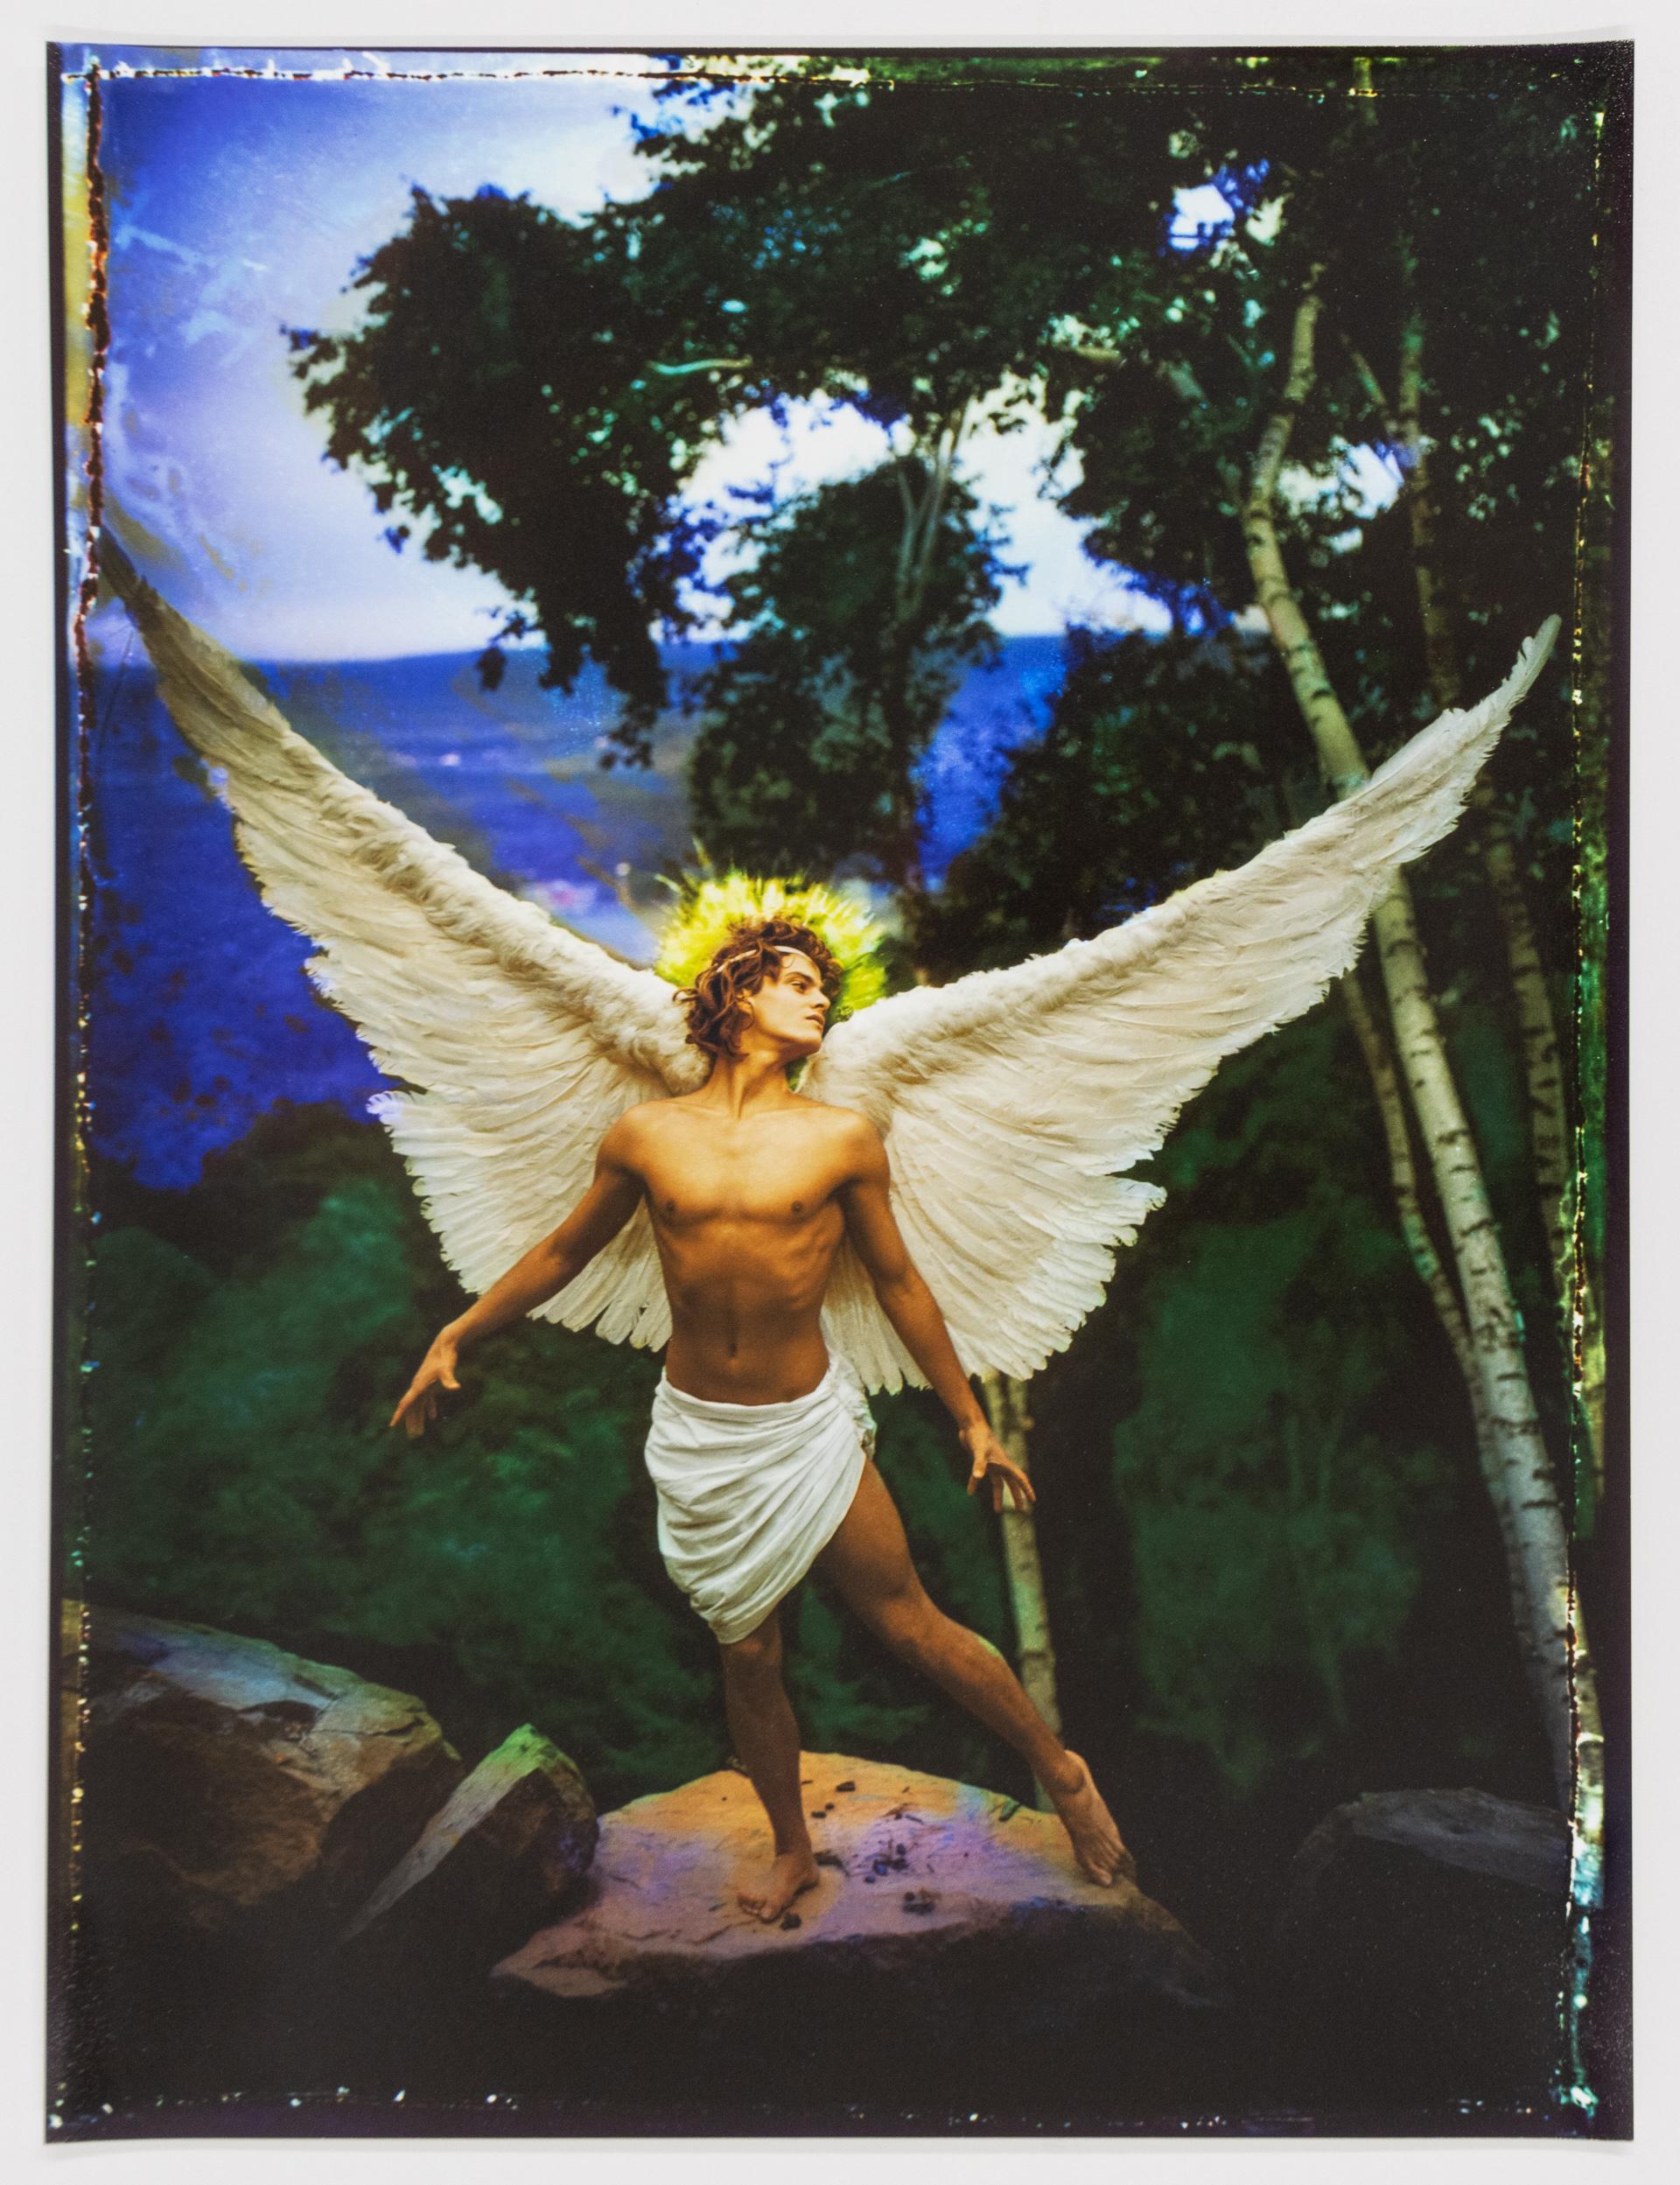 Archangel Uriel - Photograph by David LaChapelle